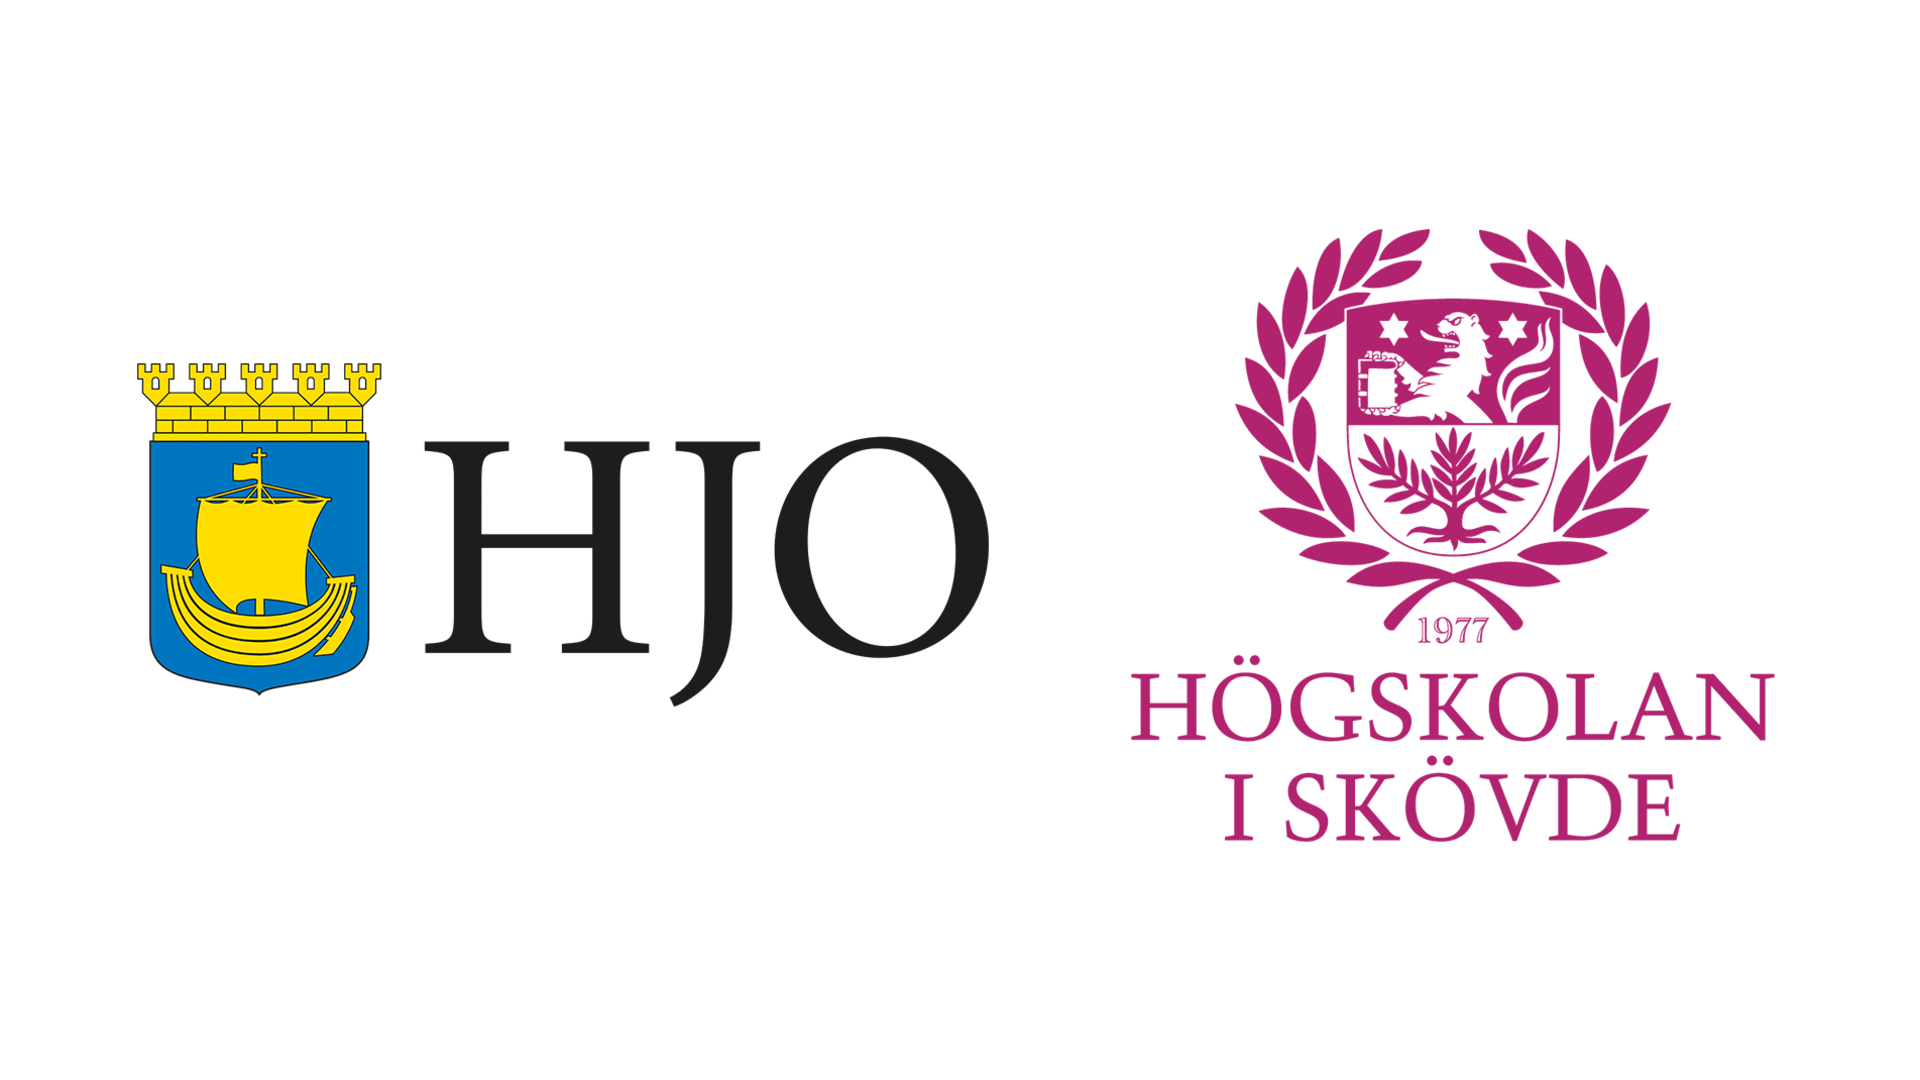 Logotyperna för Hjo kommun och Högskolan i Skövde bredvid varandra.